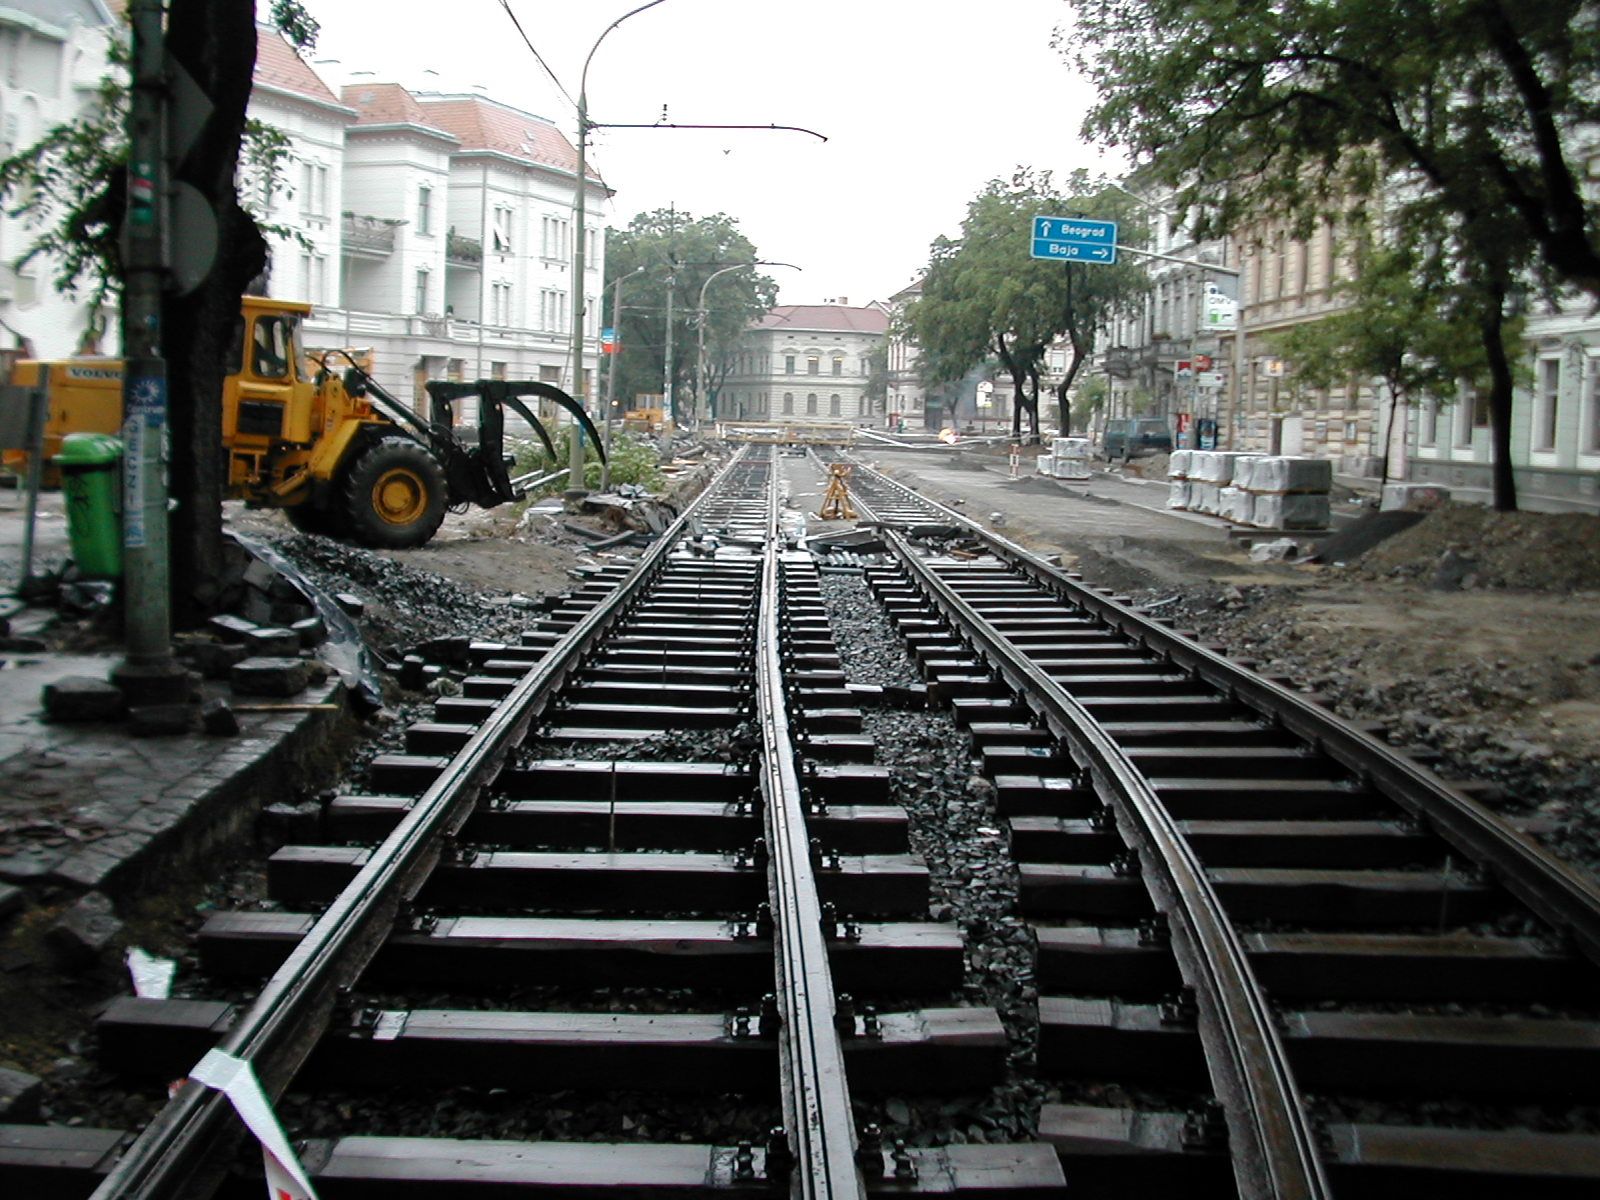 Készül a kétvágányú szakasz a Tisza Lajos körúton a Dugonics tér felé 2002. május 27-én (a képre kattintva galéria nyílik a szerző képeiből)